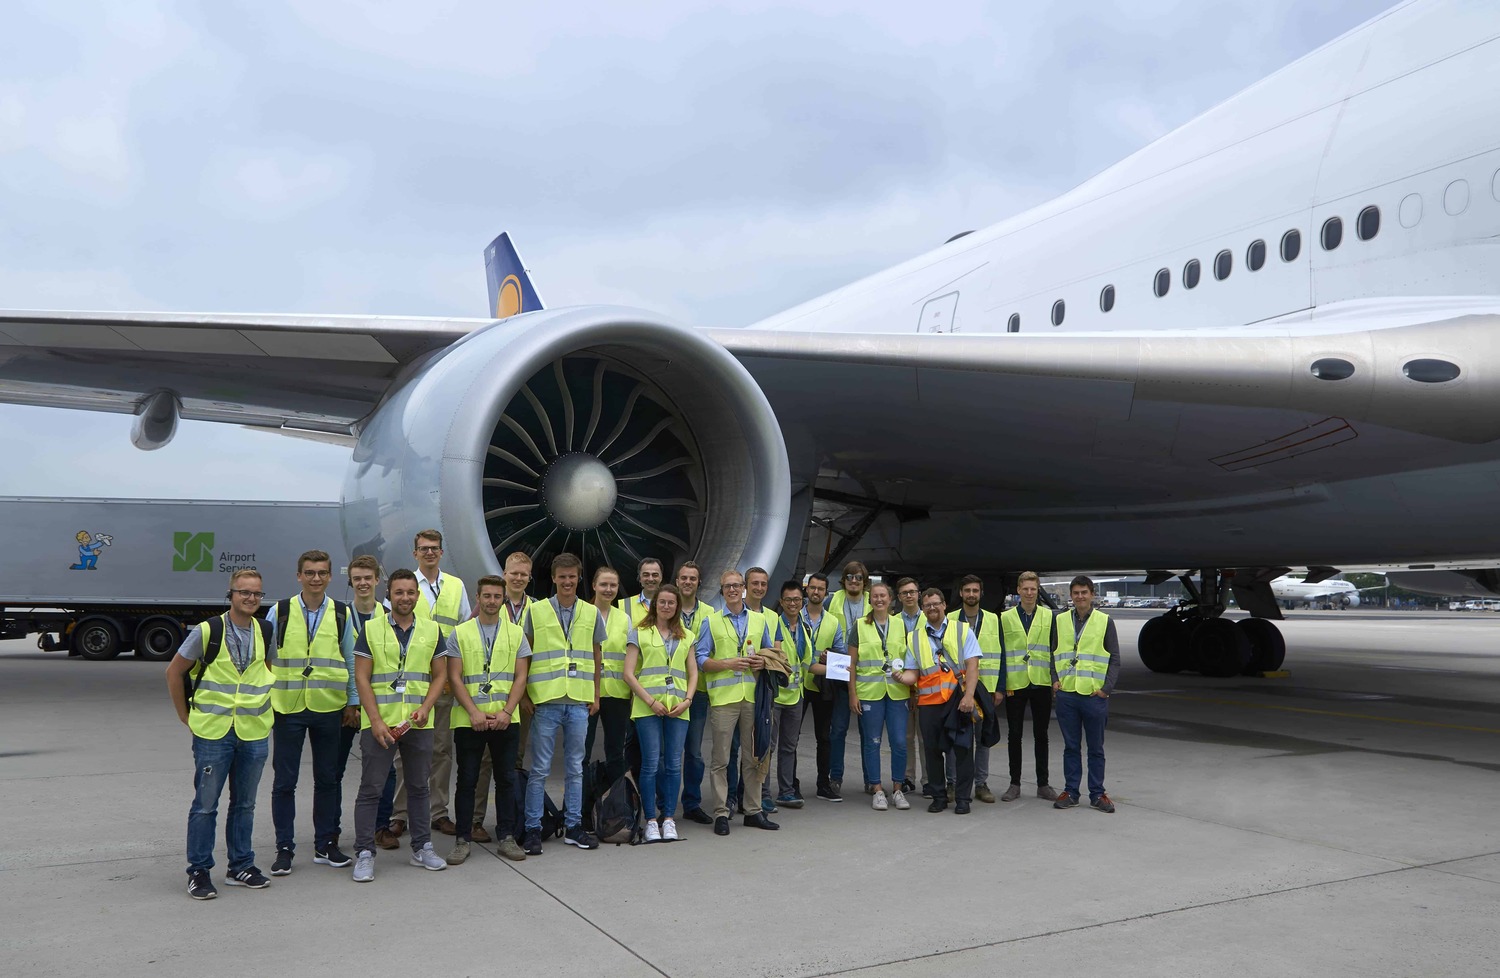 Field trip to Lufthansa Technik in Frankfurt